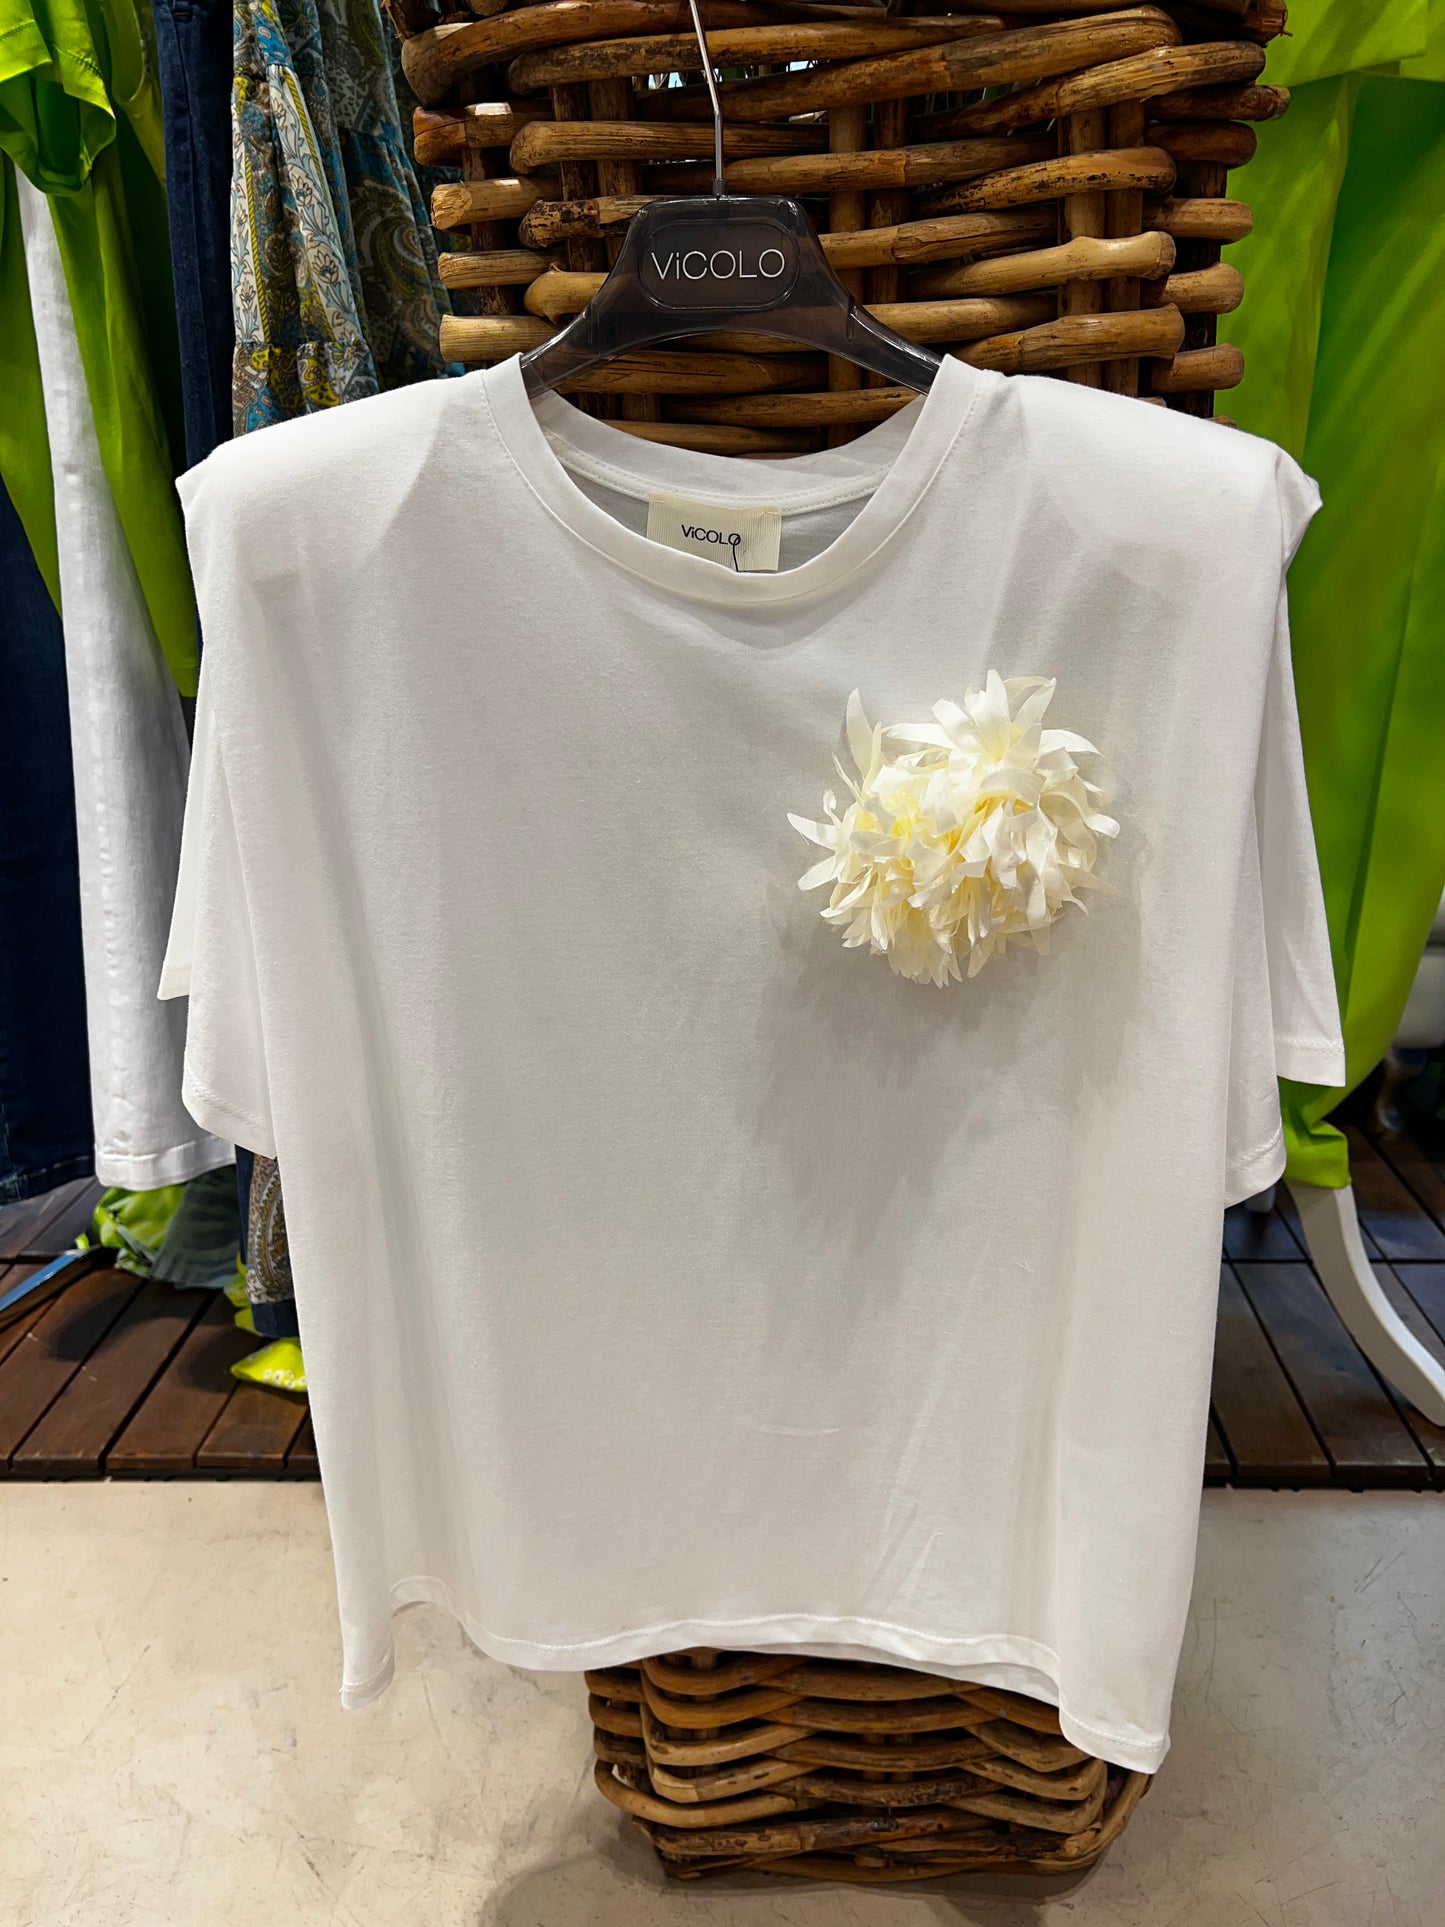 Vicolo - TU t-shirt con spalline imbottite e fiore